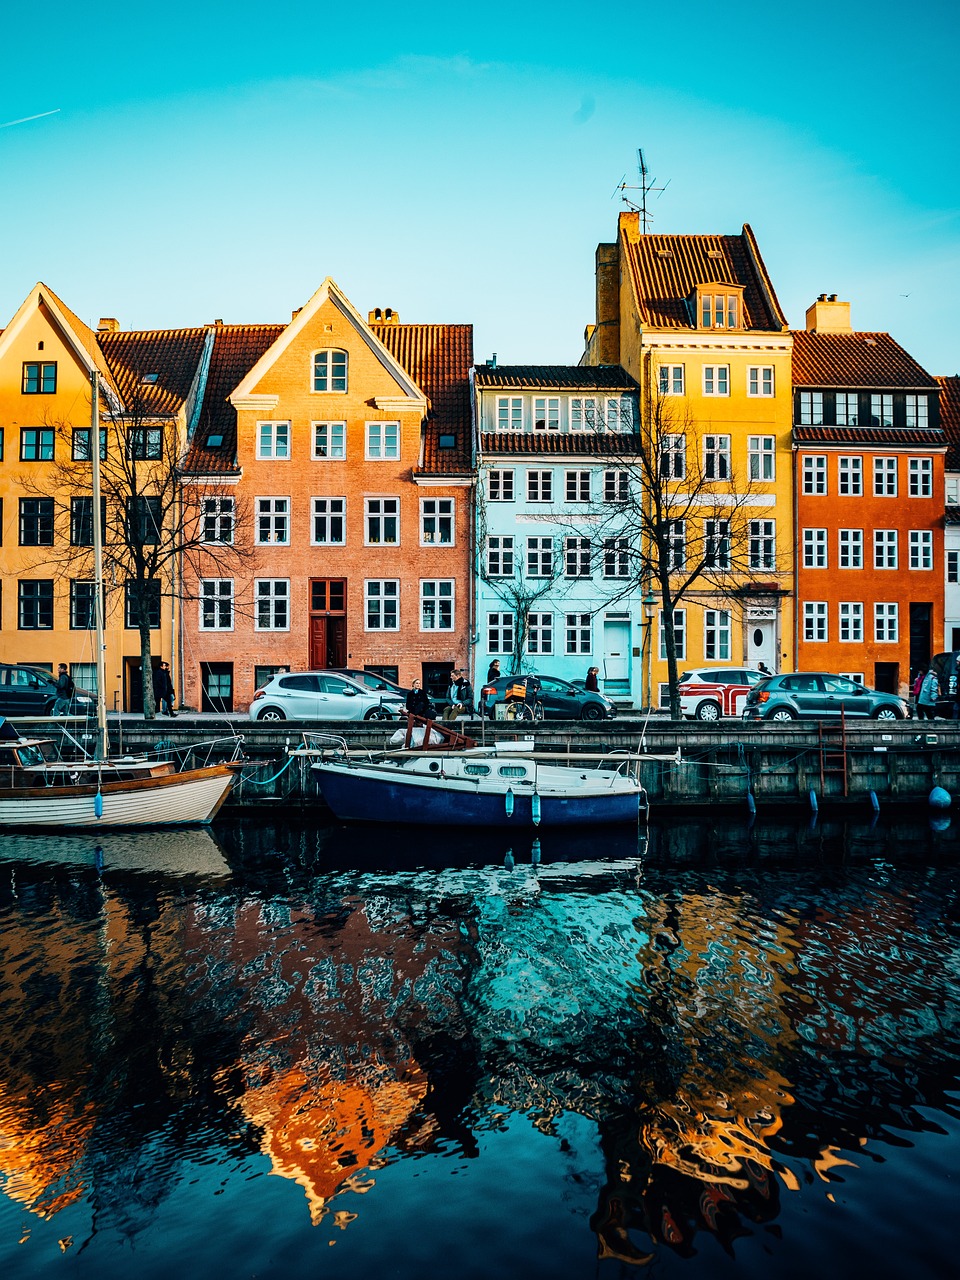 One Day in Copenhagen: Exploring the Danish Capital